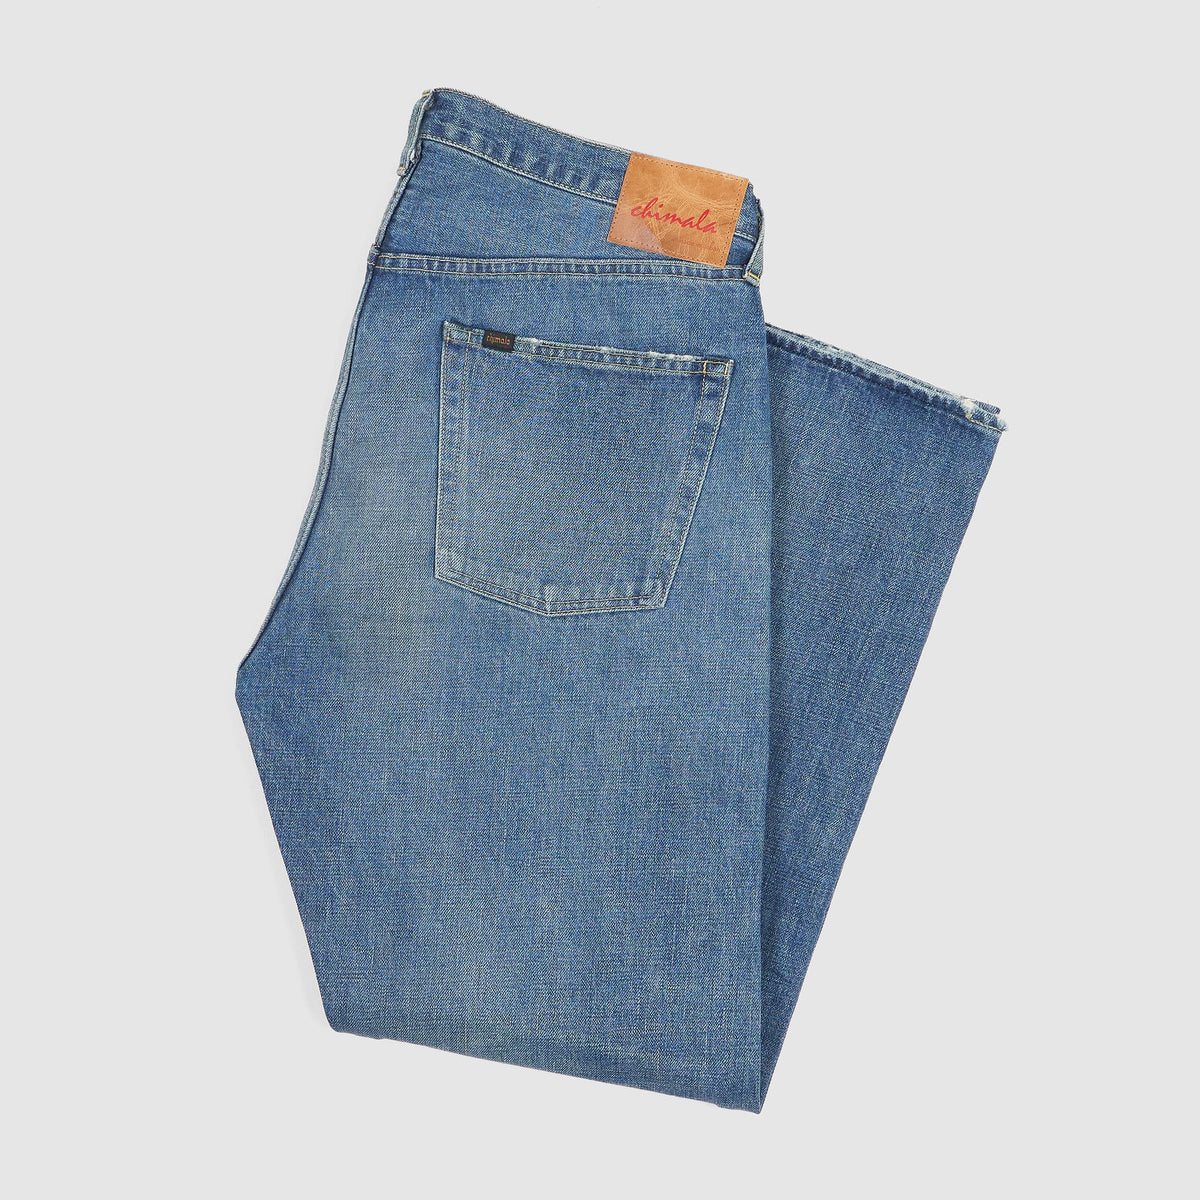 Chimala 5-Pocket Light Destroyed Denim Jeans